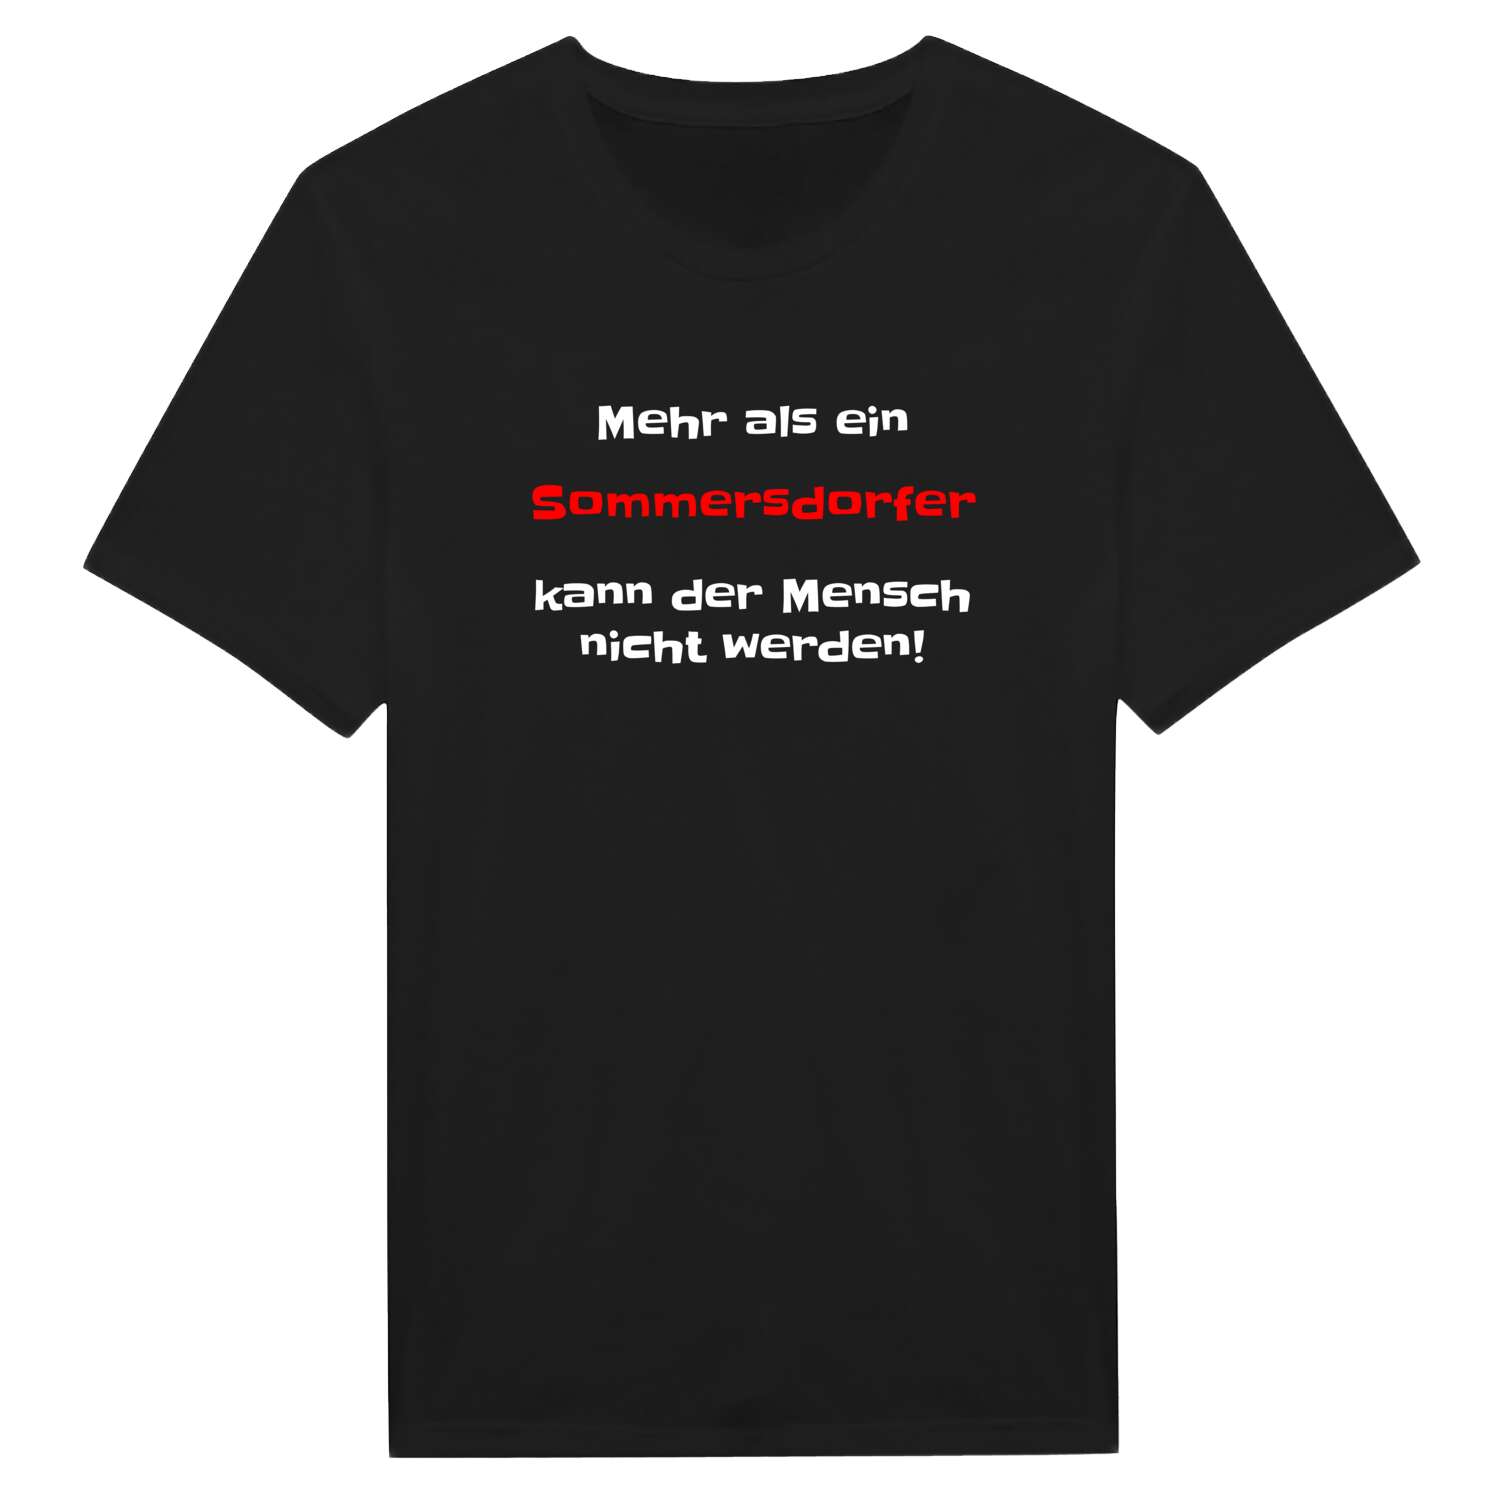 Sommersdorf T-Shirt »Mehr als ein«